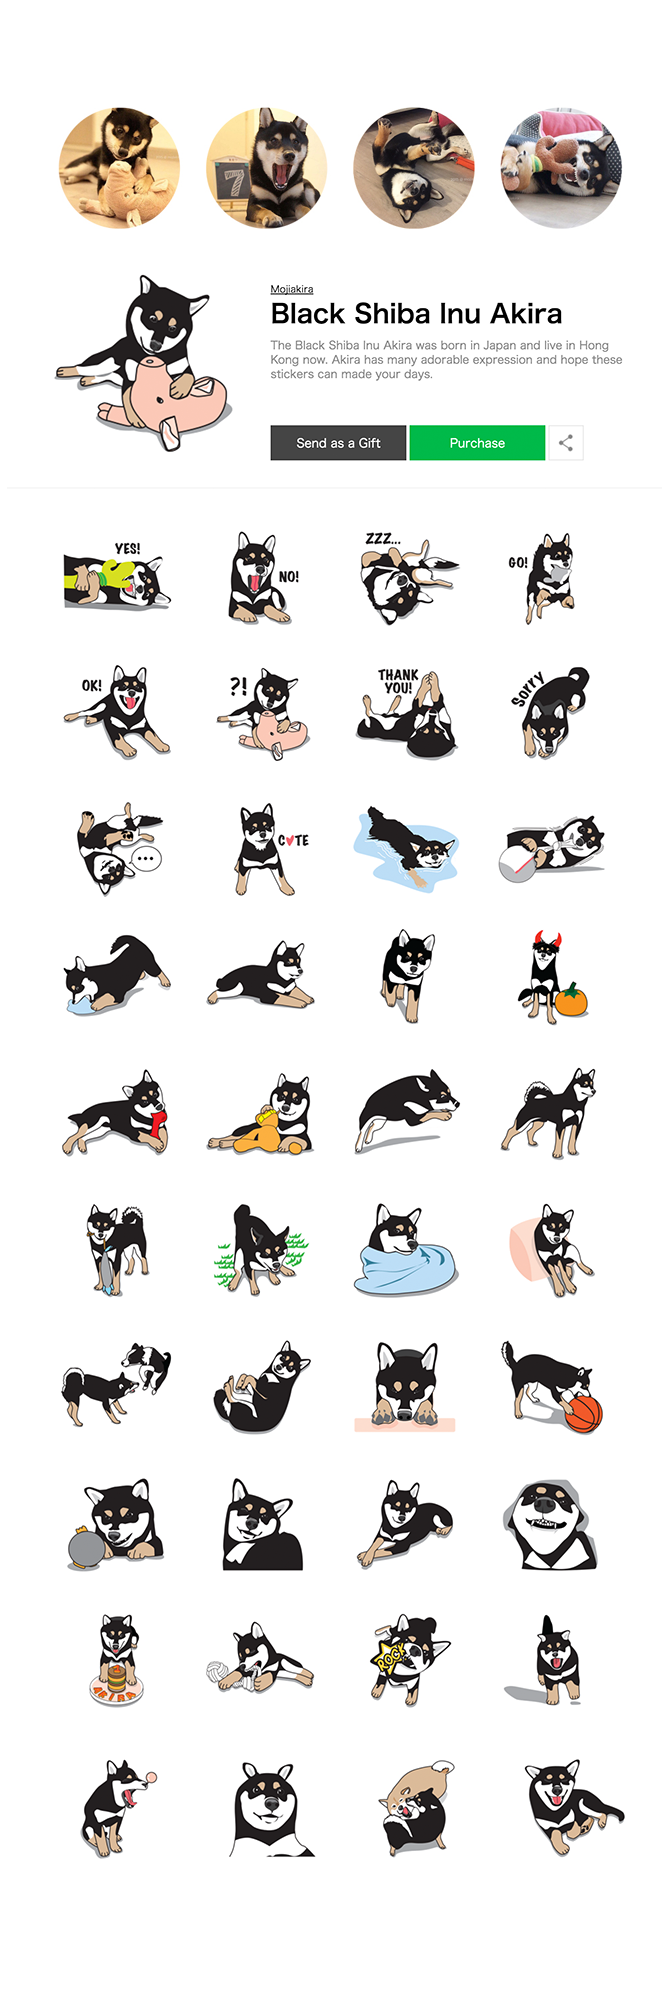 LINESTICKERS shibainu dog graphic characterdesign